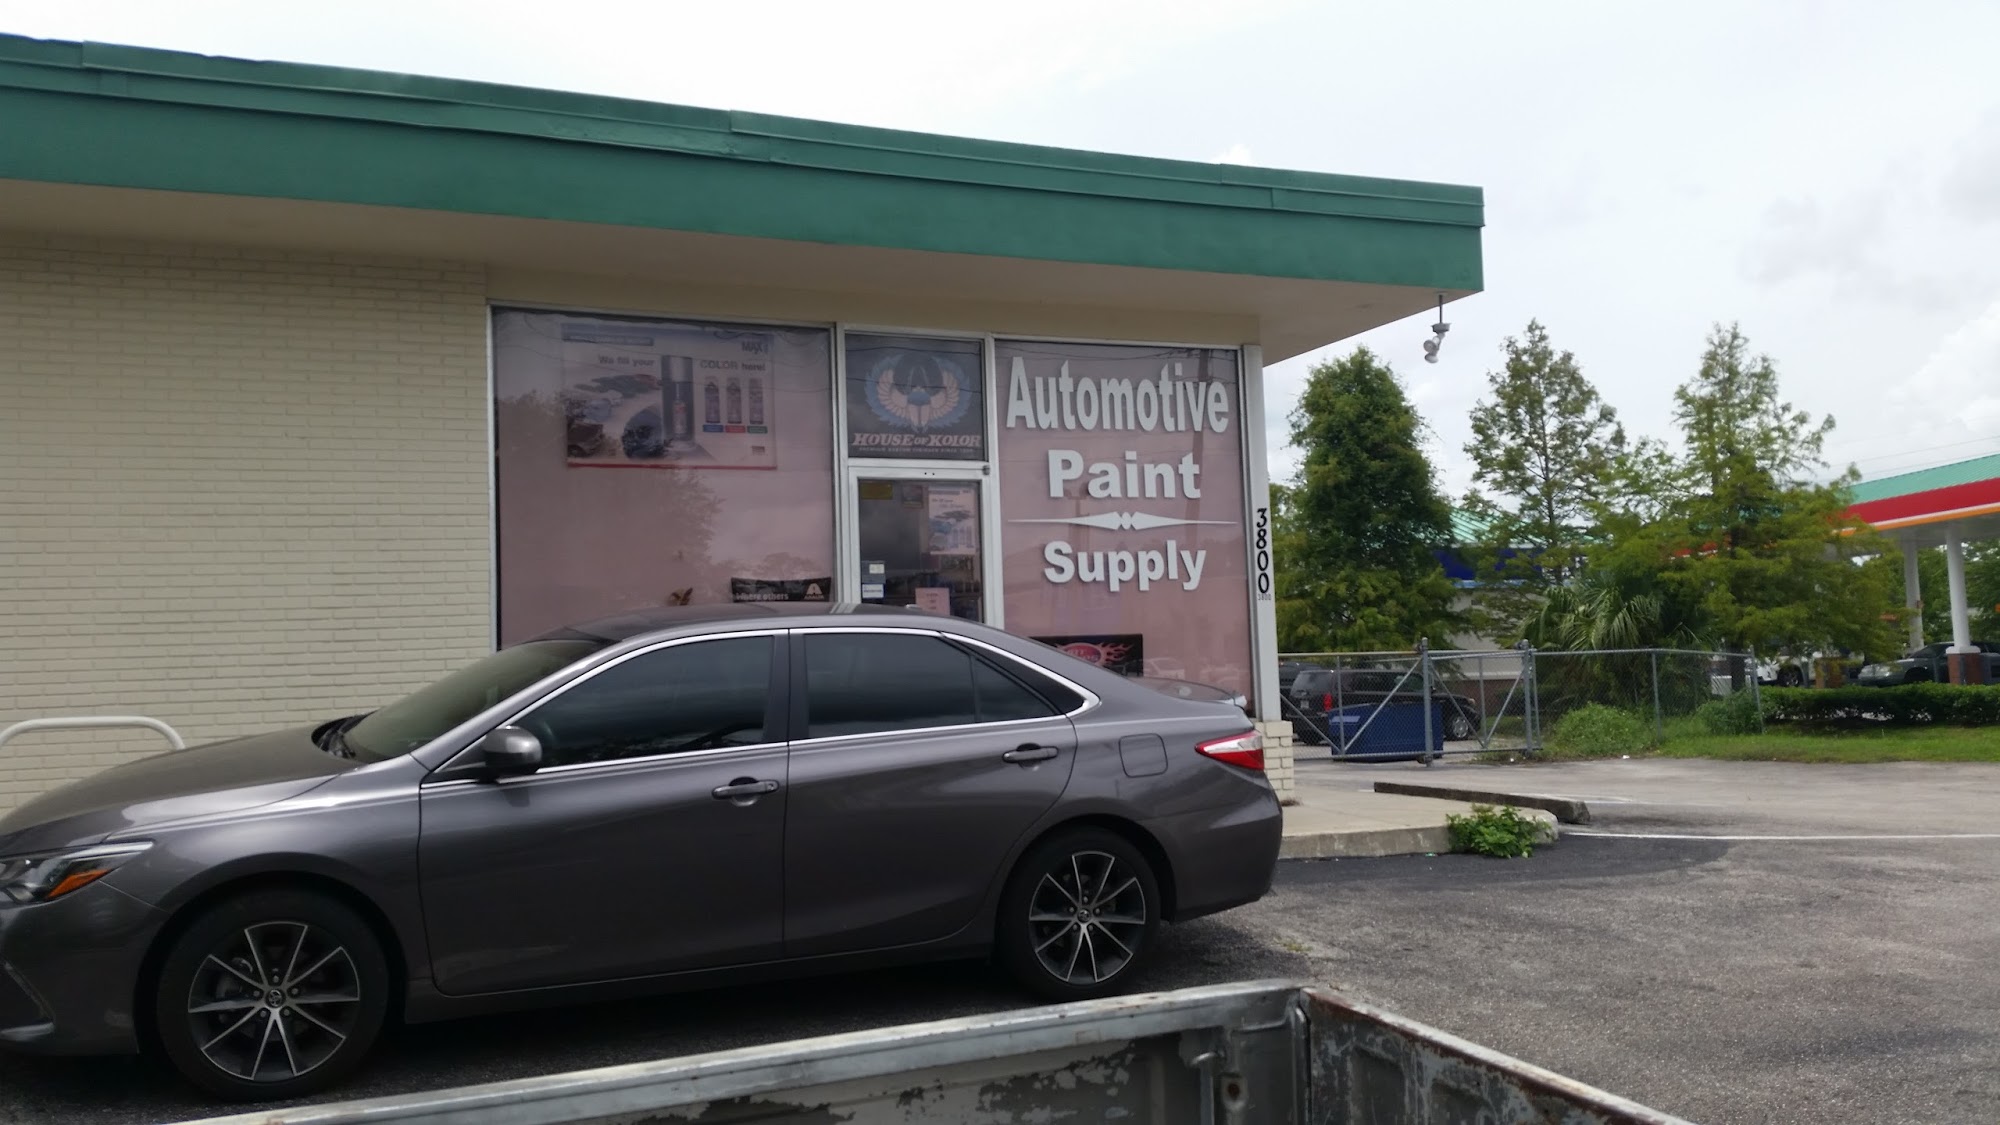 Automotive Paint & Supply Co.